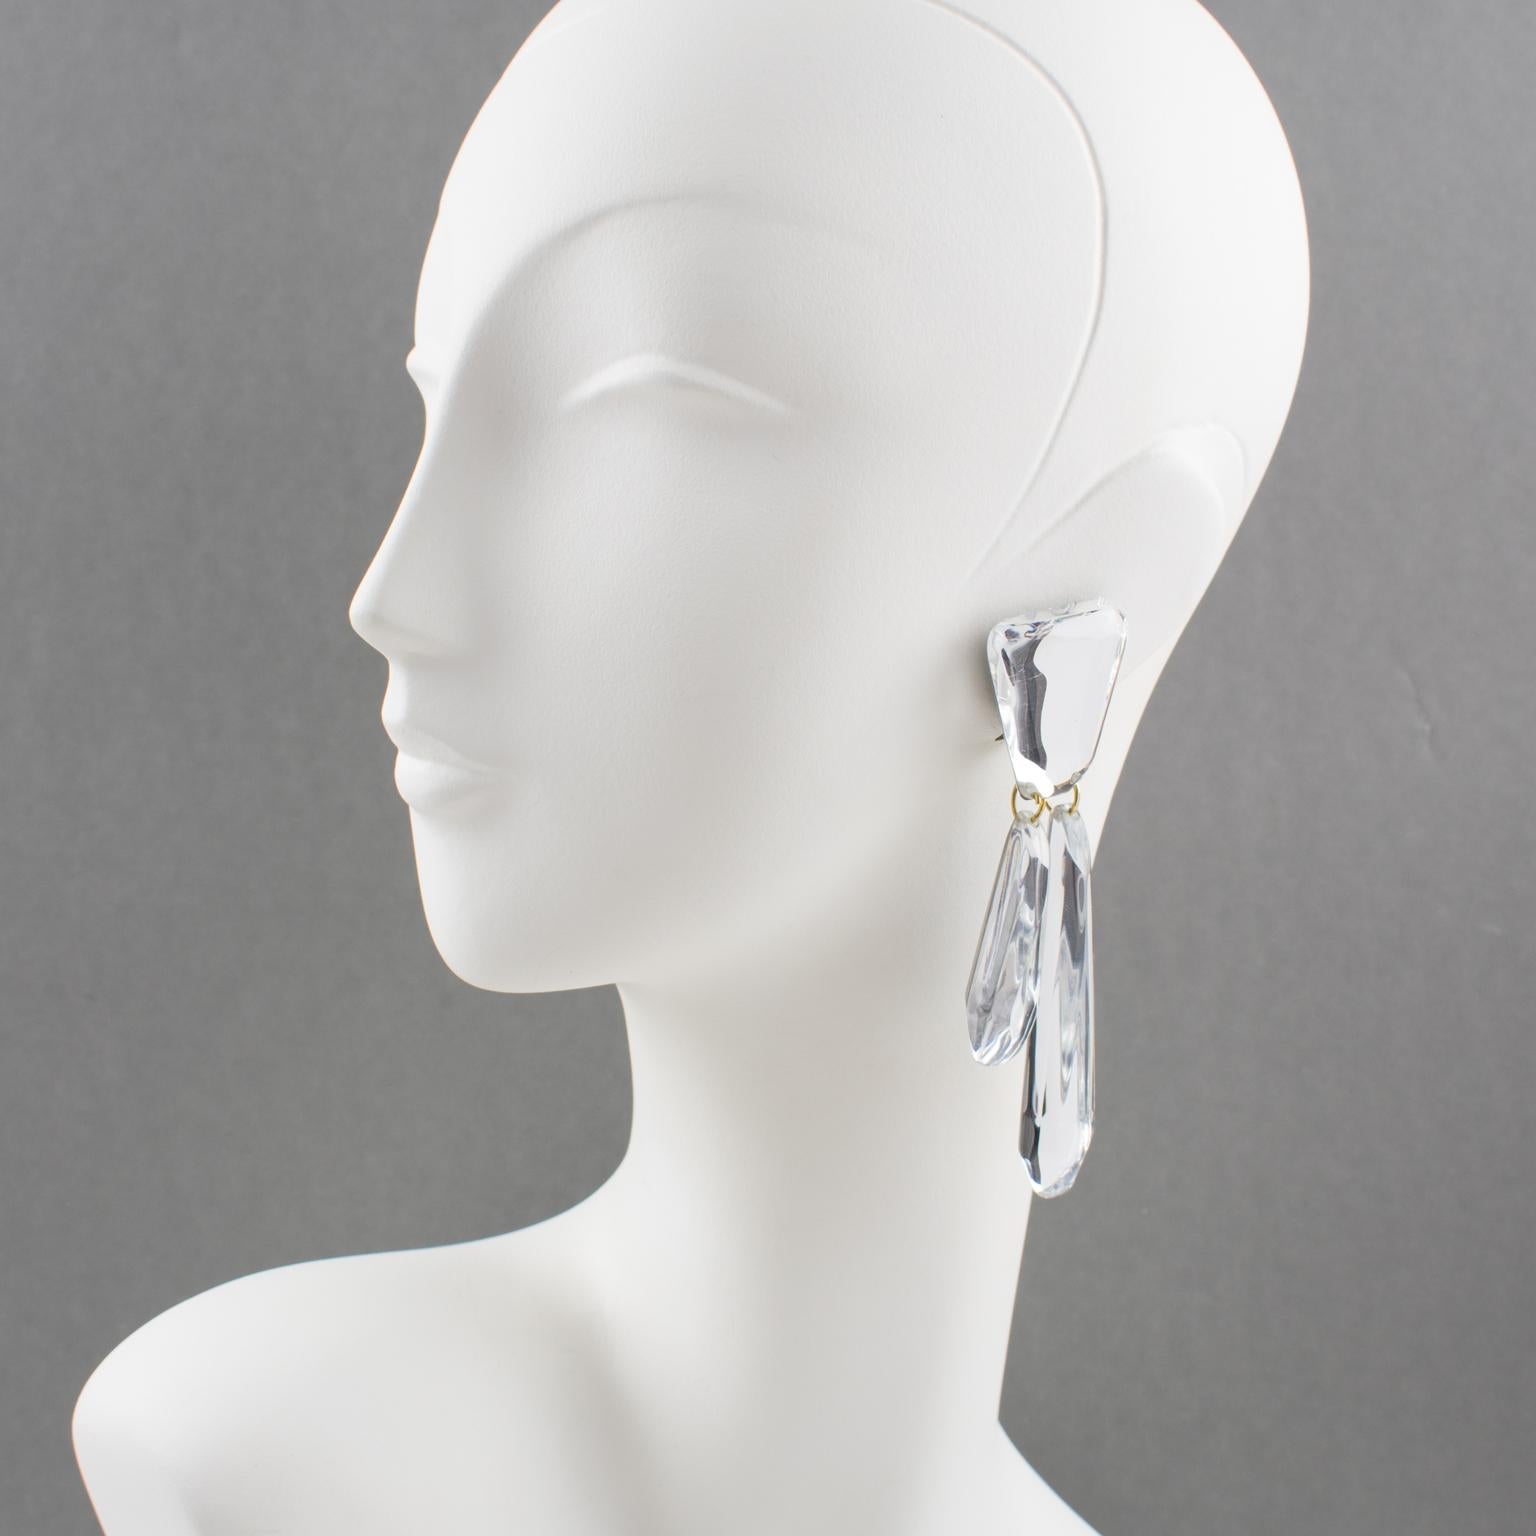 Harriet Bauknight hat für Kaso diese eleganten, übergroßen, baumelnden Kronleuchter-Ohrringe aus Lucit entworfen. Die dimensionalen geometrischen Formen sind mit baumelnden Charms mit Spiegelstruktur und edler silberner Glitzerfarbe versehen. Der